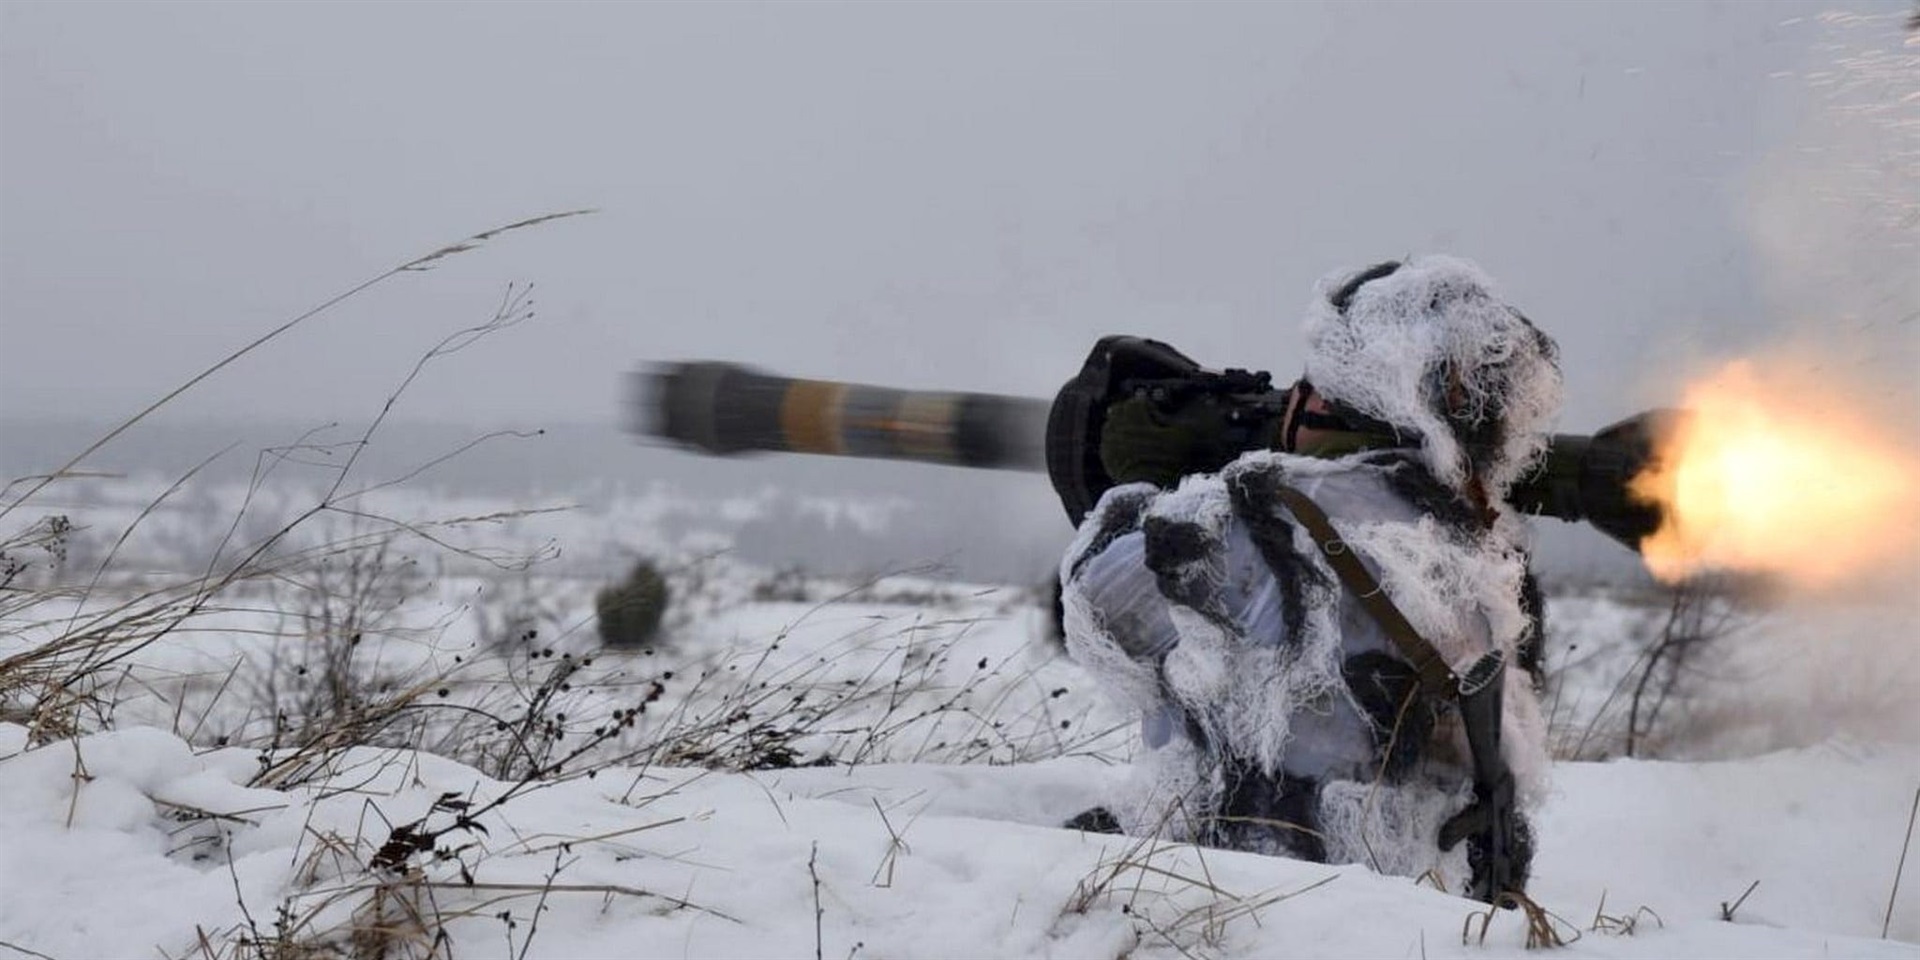 Ukraynalı bir savaşçı, İngiltere tarafından sağlanan bir NLAW silahını ateşliyor.  REUTERS aracılığıyla.